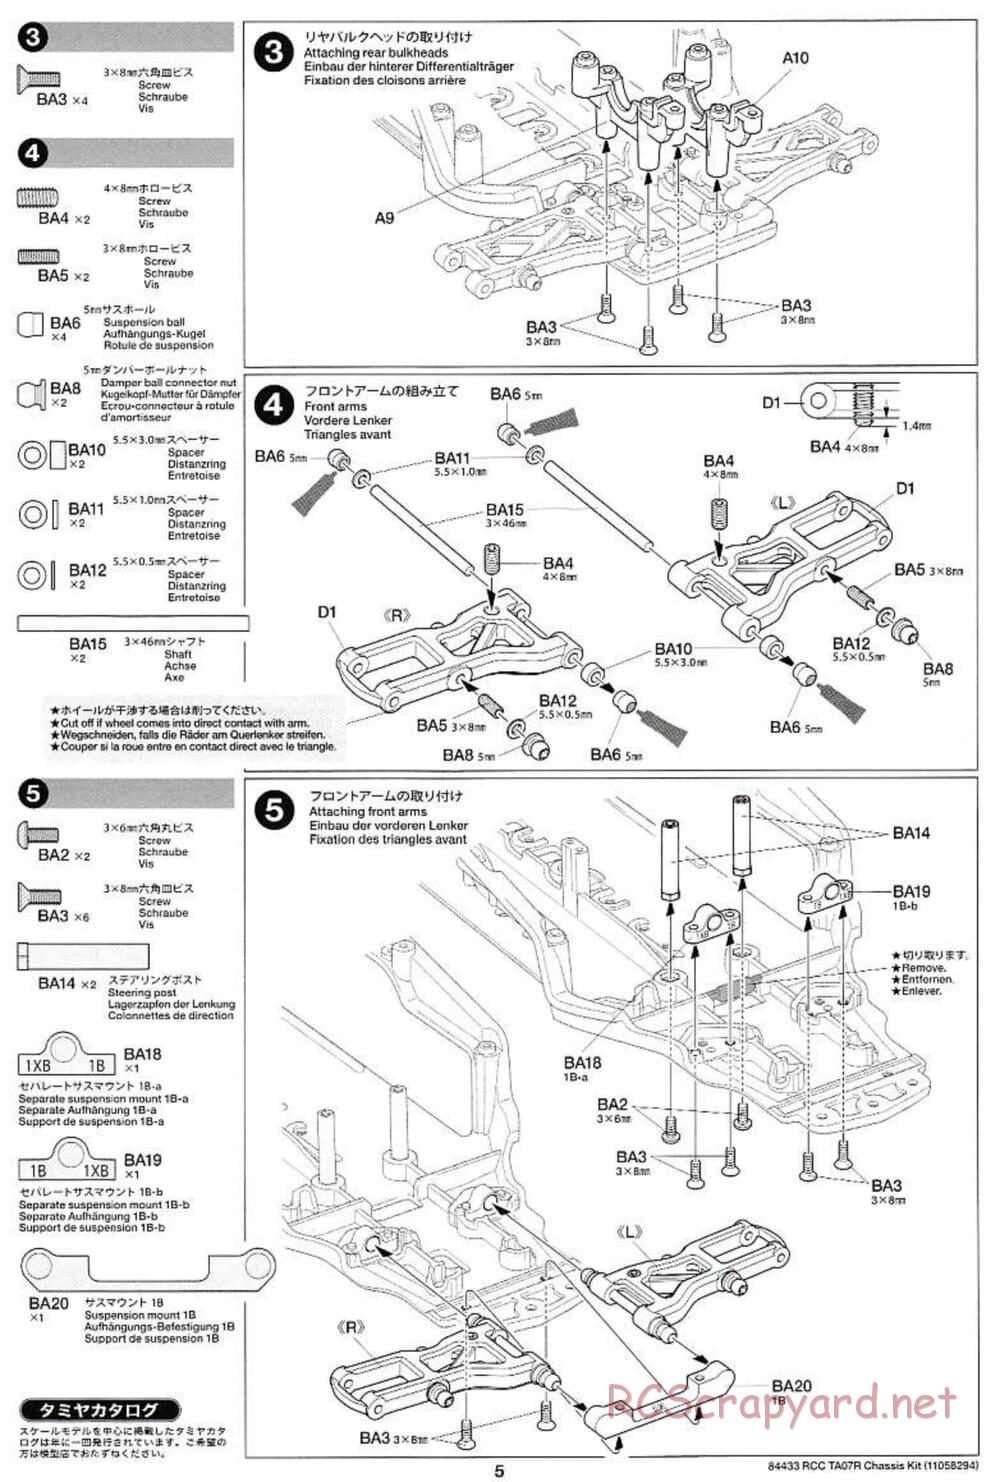 Tamiya - TA07 R Chassis - Manual - Page 5